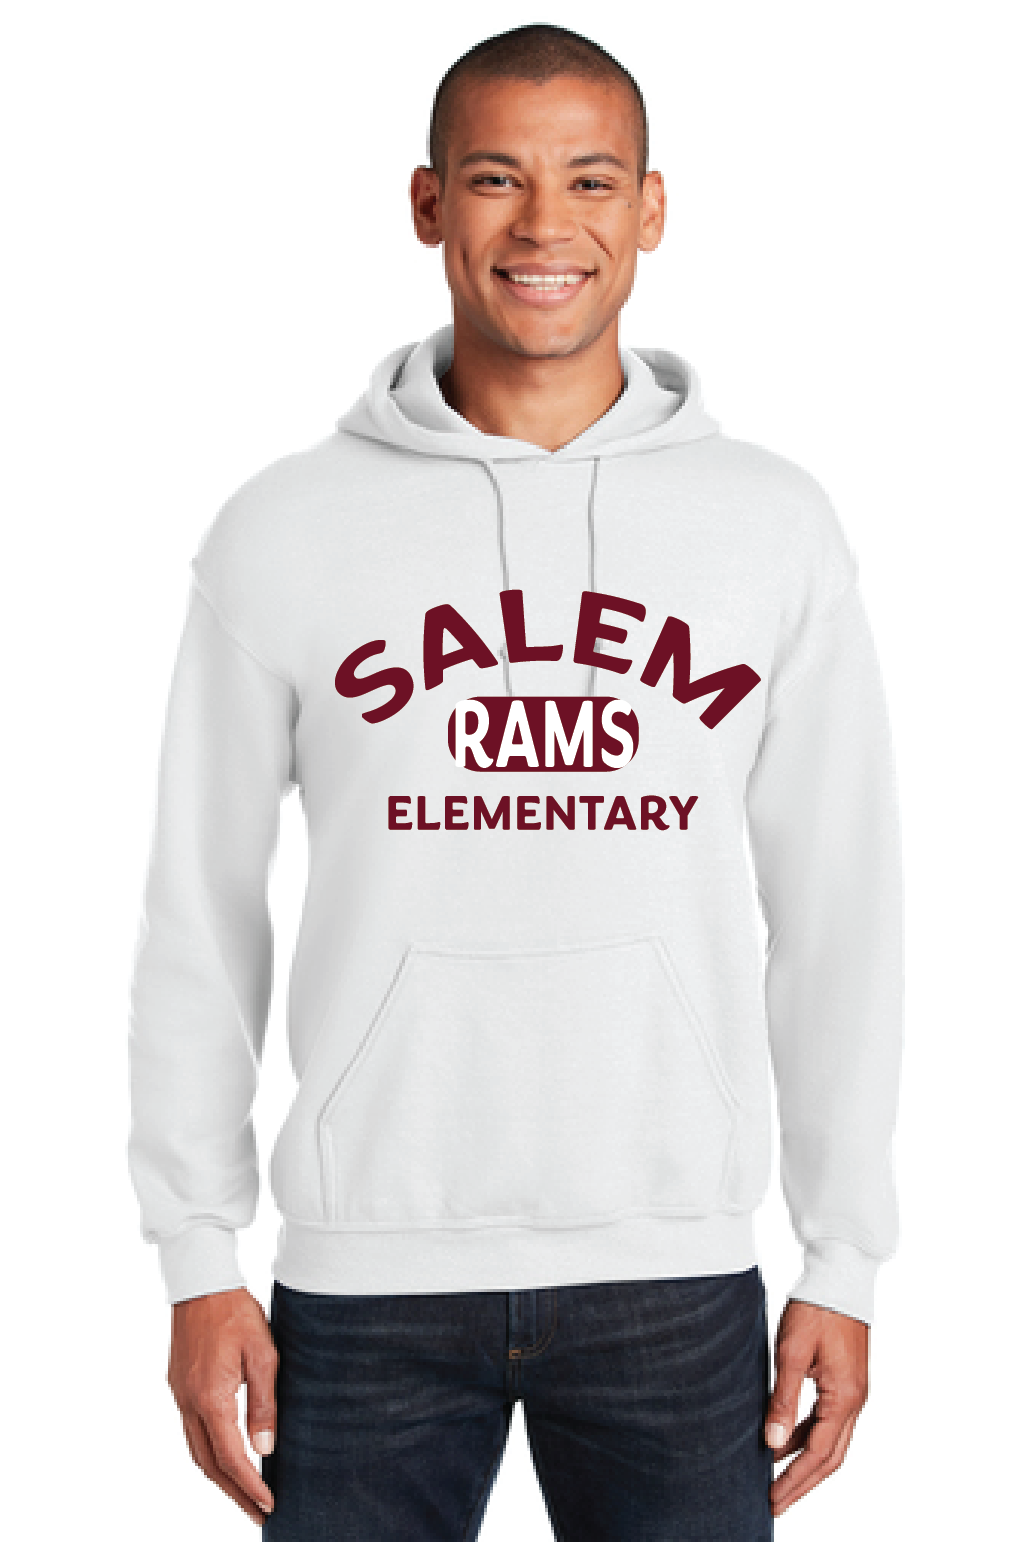 Fleece Hooded Sweatshirt / White / Salem Elementary School